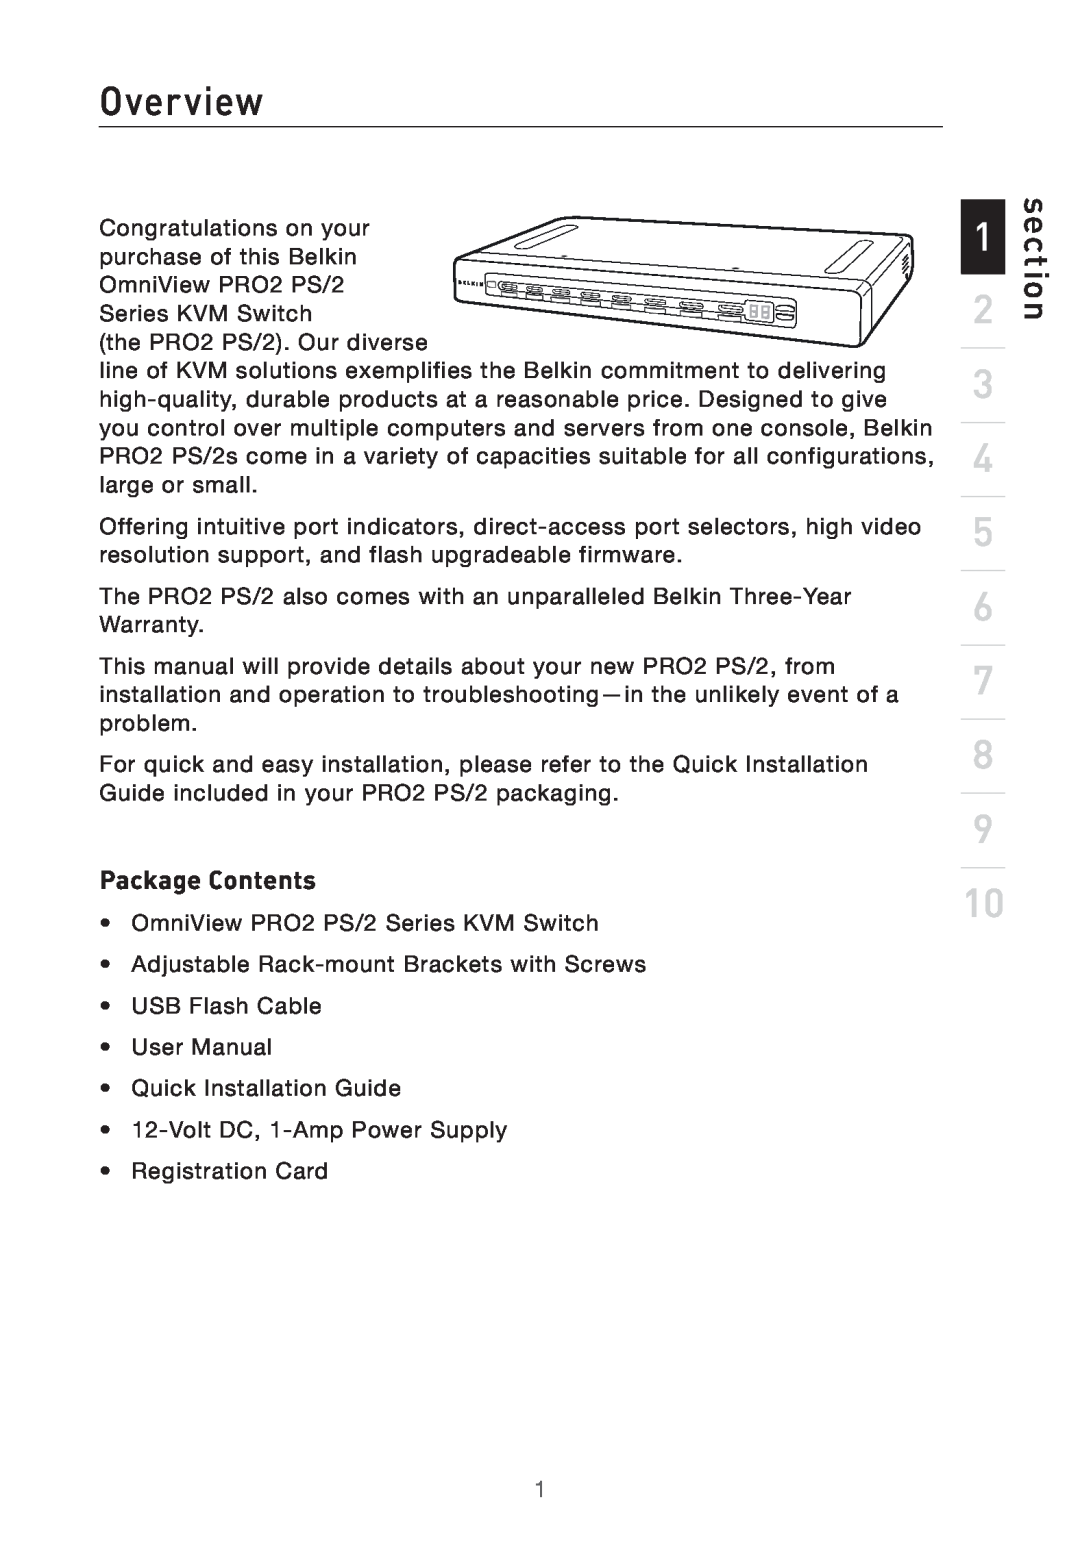 Belkin F1DA116PEA, F1DA108PEA, F1DA104PEA user manual Overview, section, Package Contents 